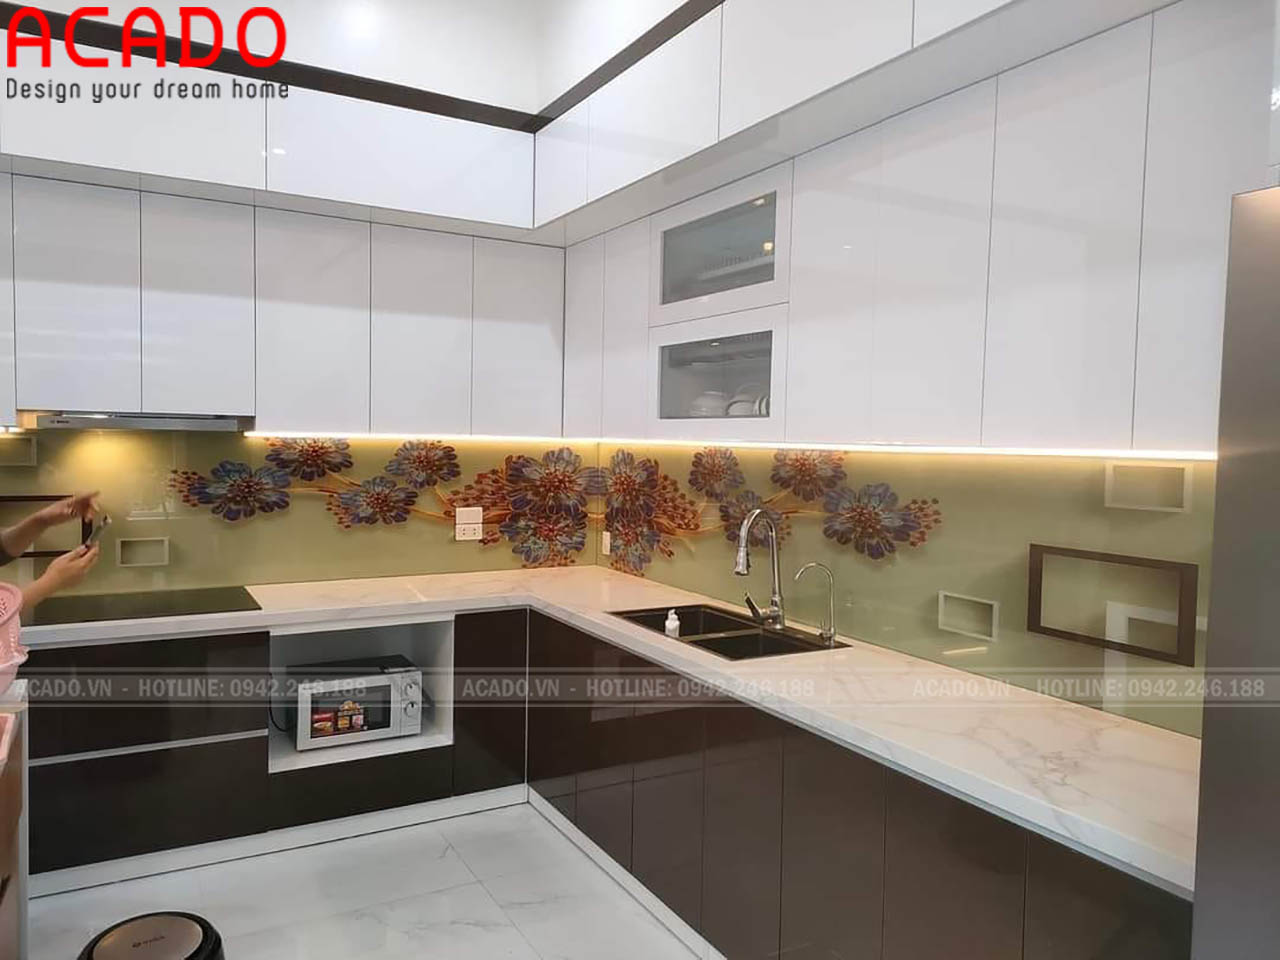 Thiết kế tủ bếp chất liệu Acrylic kết jopwj kính 3D - Tủ bếp tại Mỹ Hào